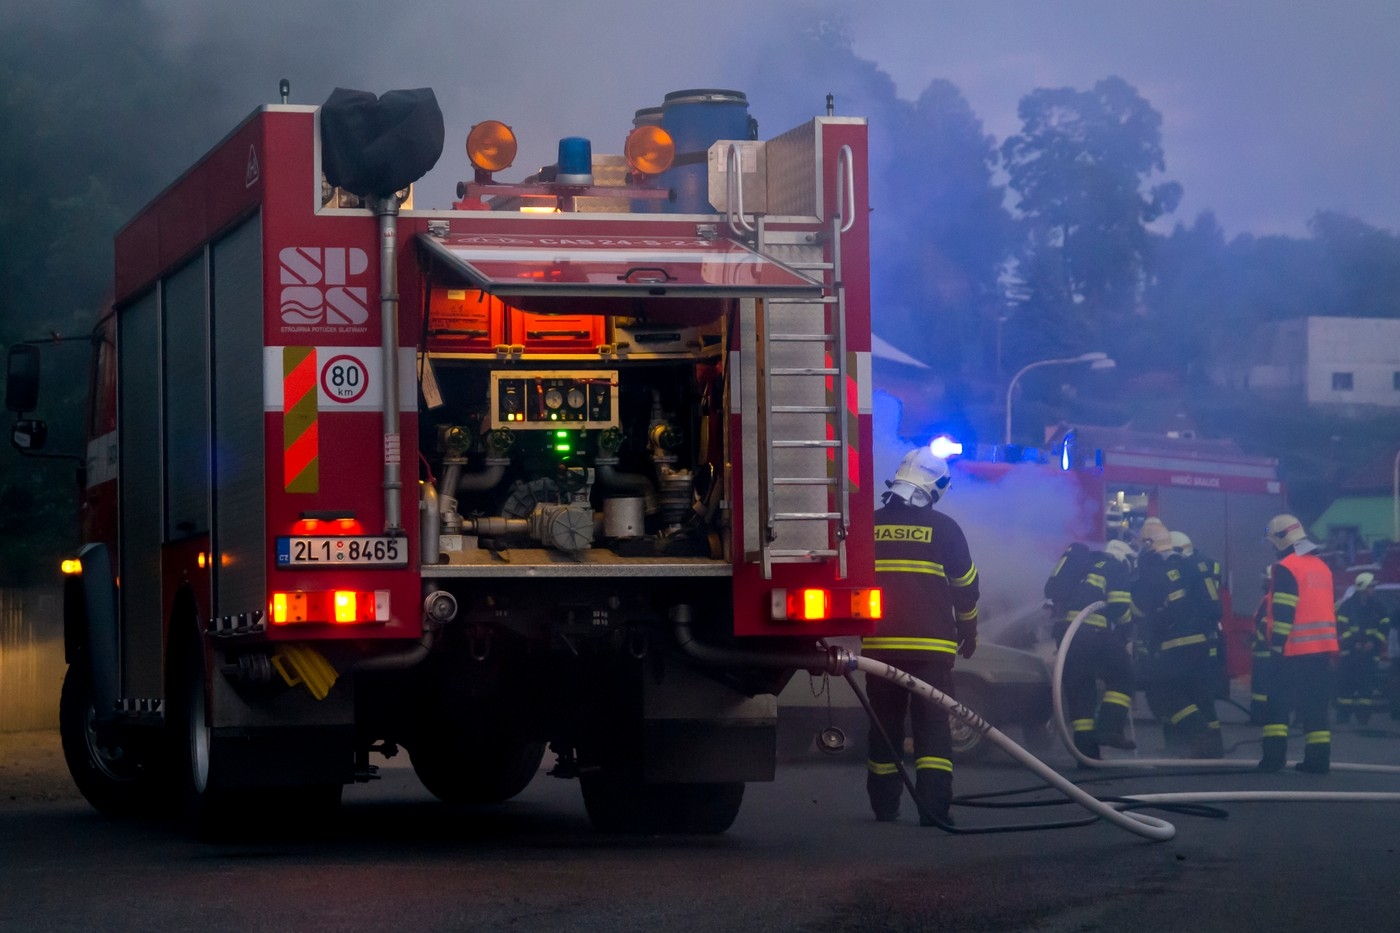 Loňský rok patřil v Evropě k nejhorším z hlediska požárů, uvádí zpráva EK